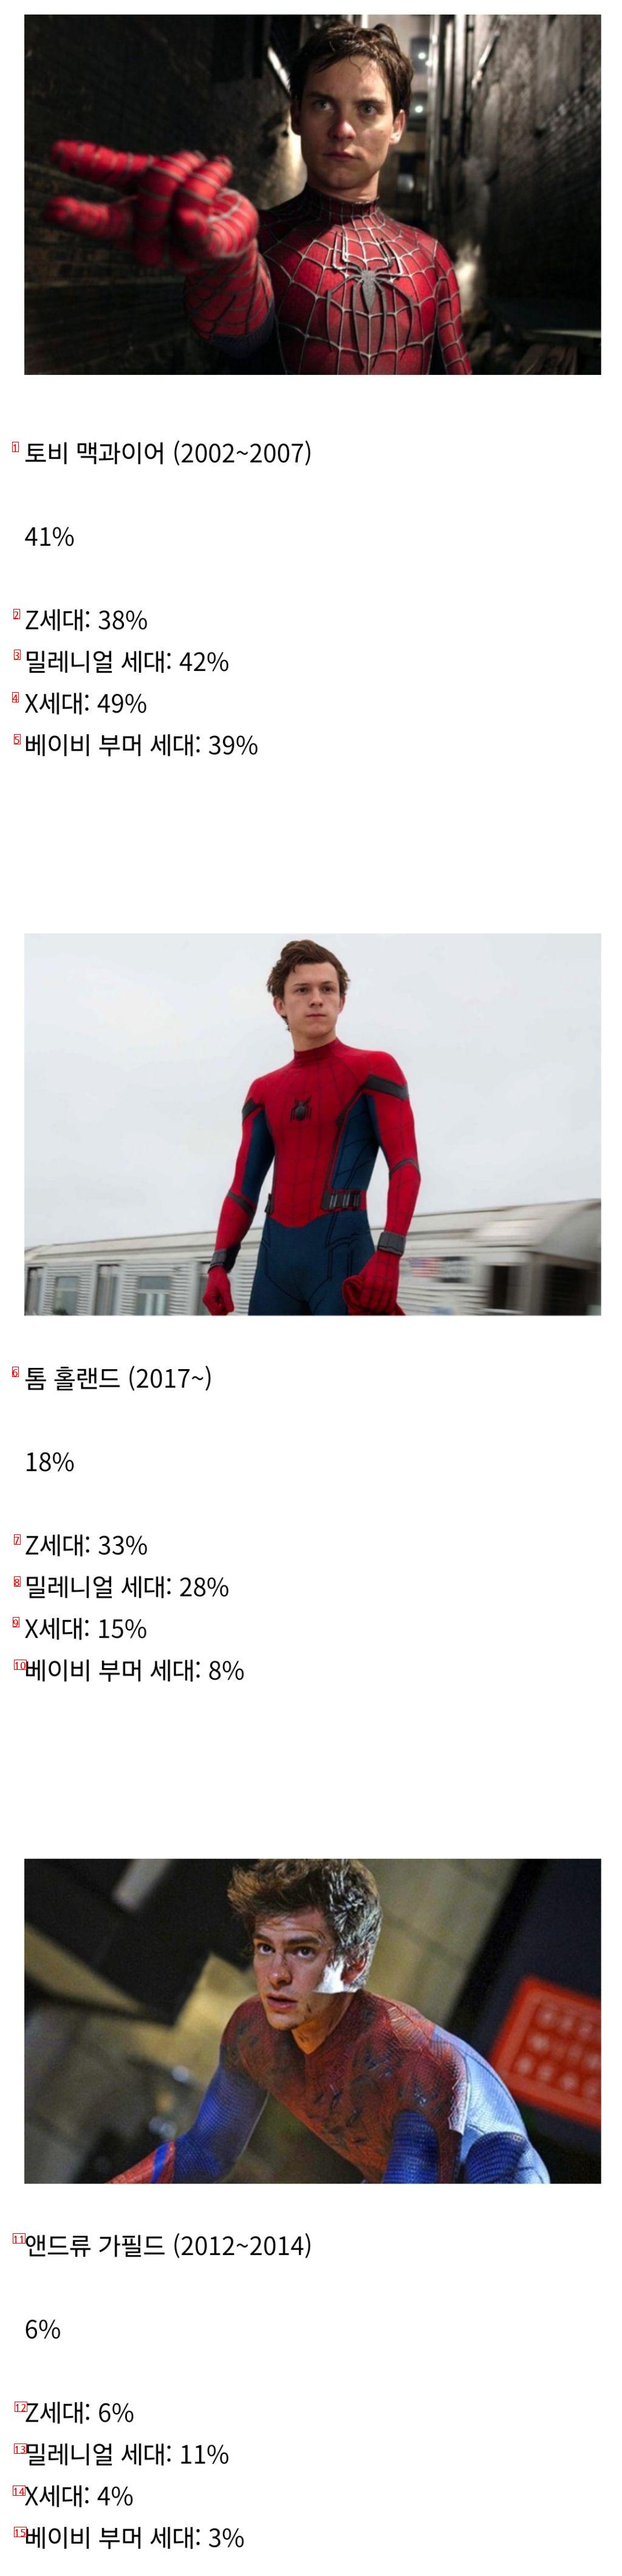 미국에서 발표된 ‘가장 좋아하는 스파이더맨 배우’ 설문조사 결과